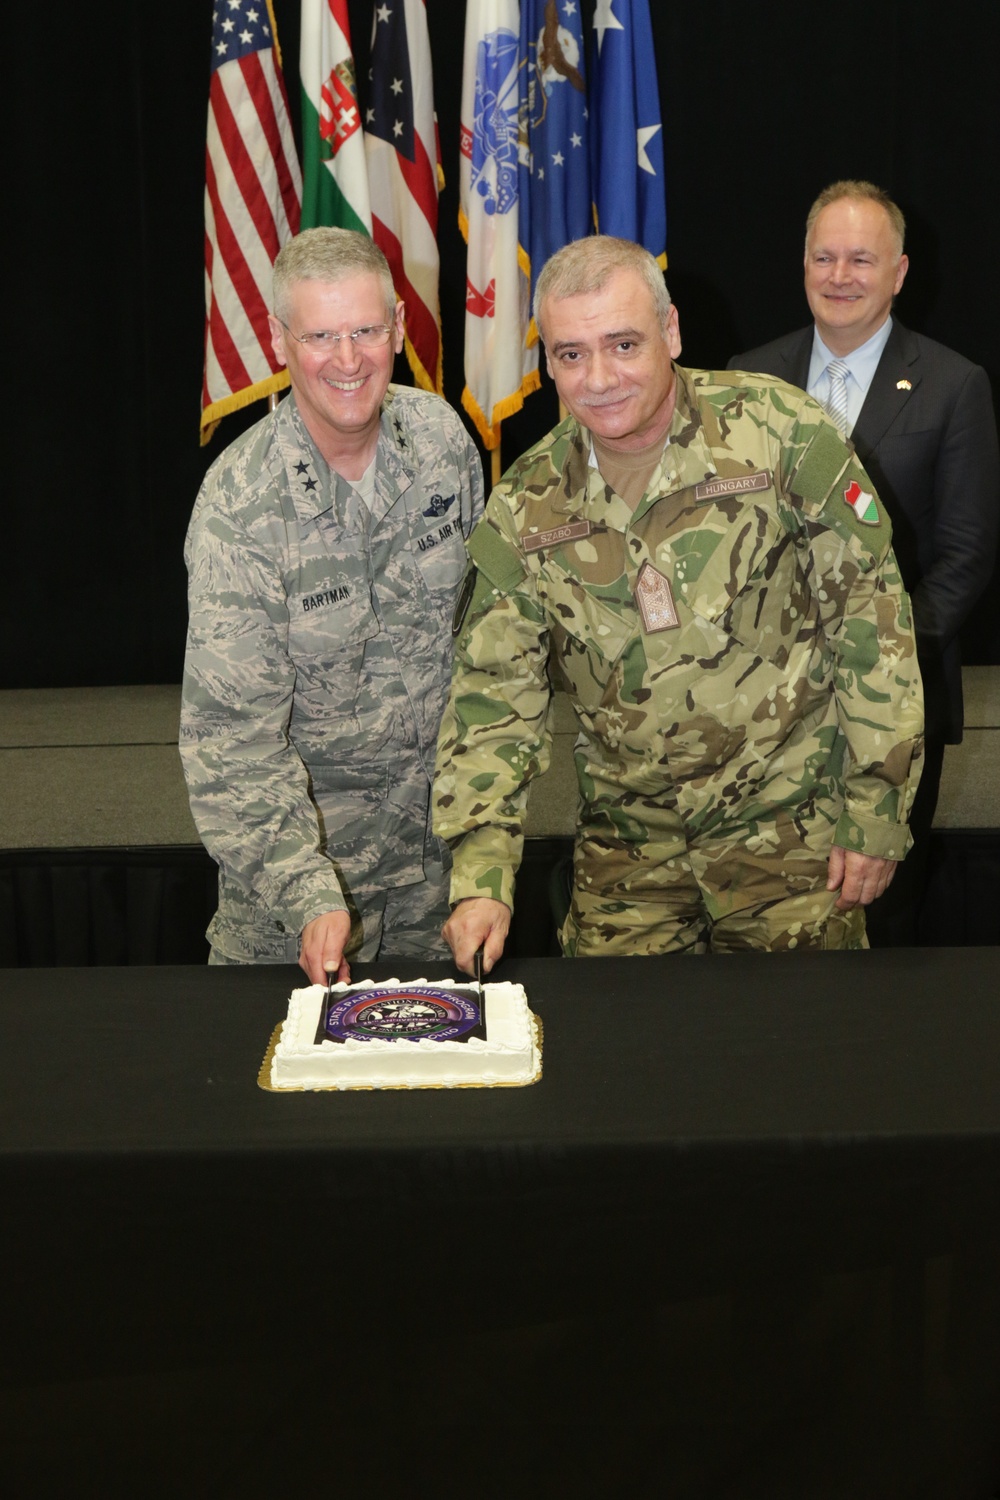 Ceremony celebrates Ohio National Guard’s 25-year partnership with Hungary